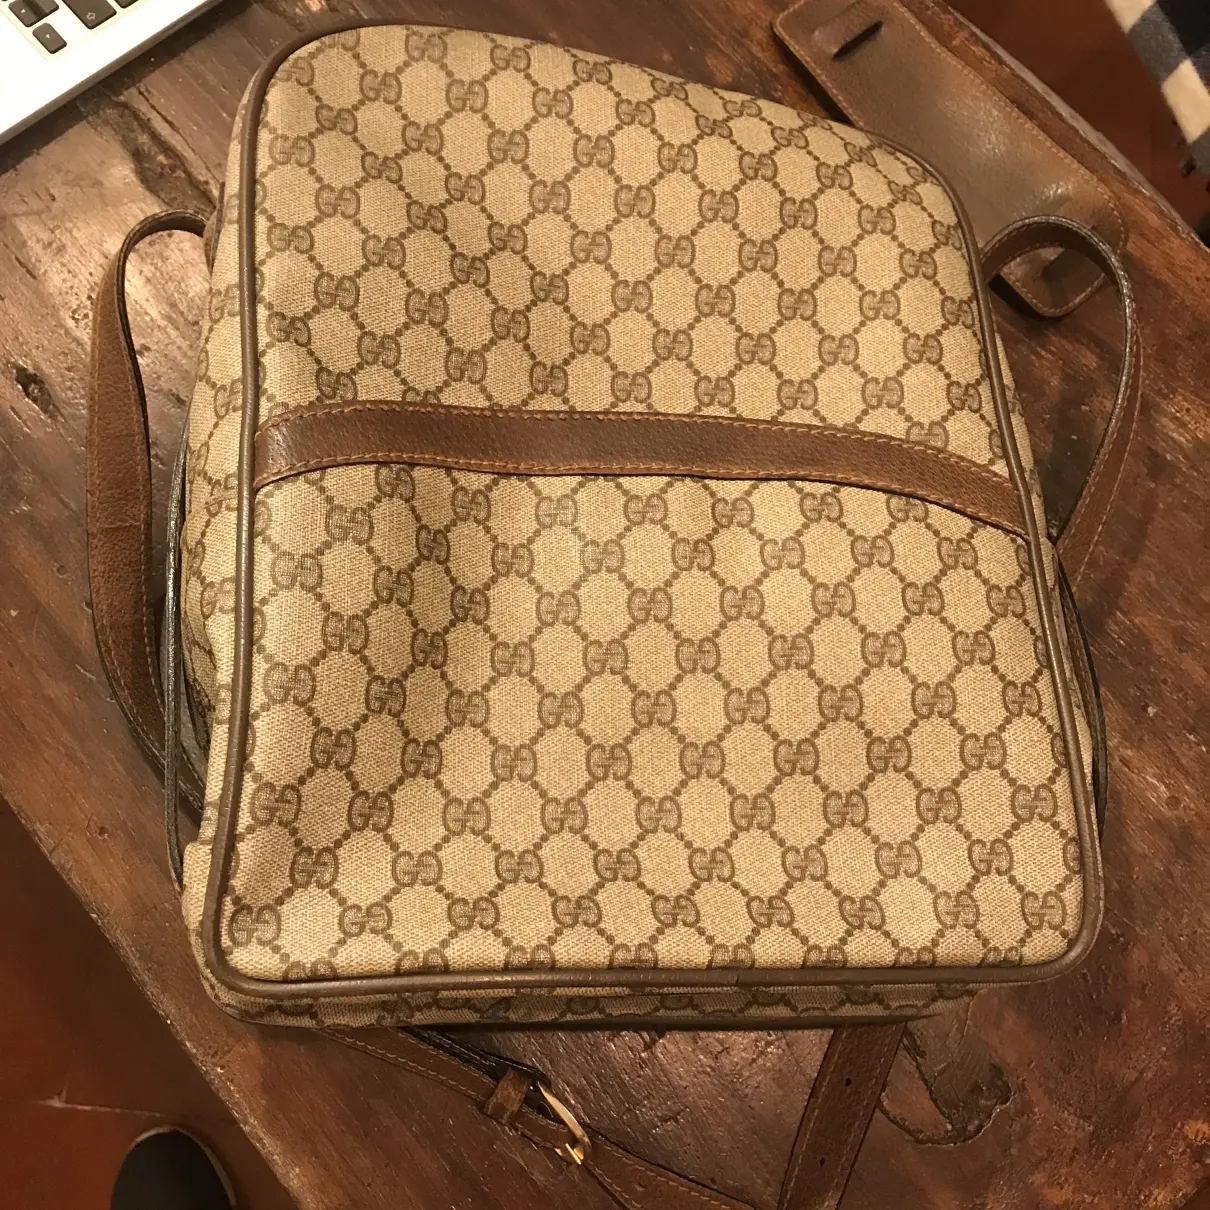 Buy Gucci Cloth handbag online - Vintage